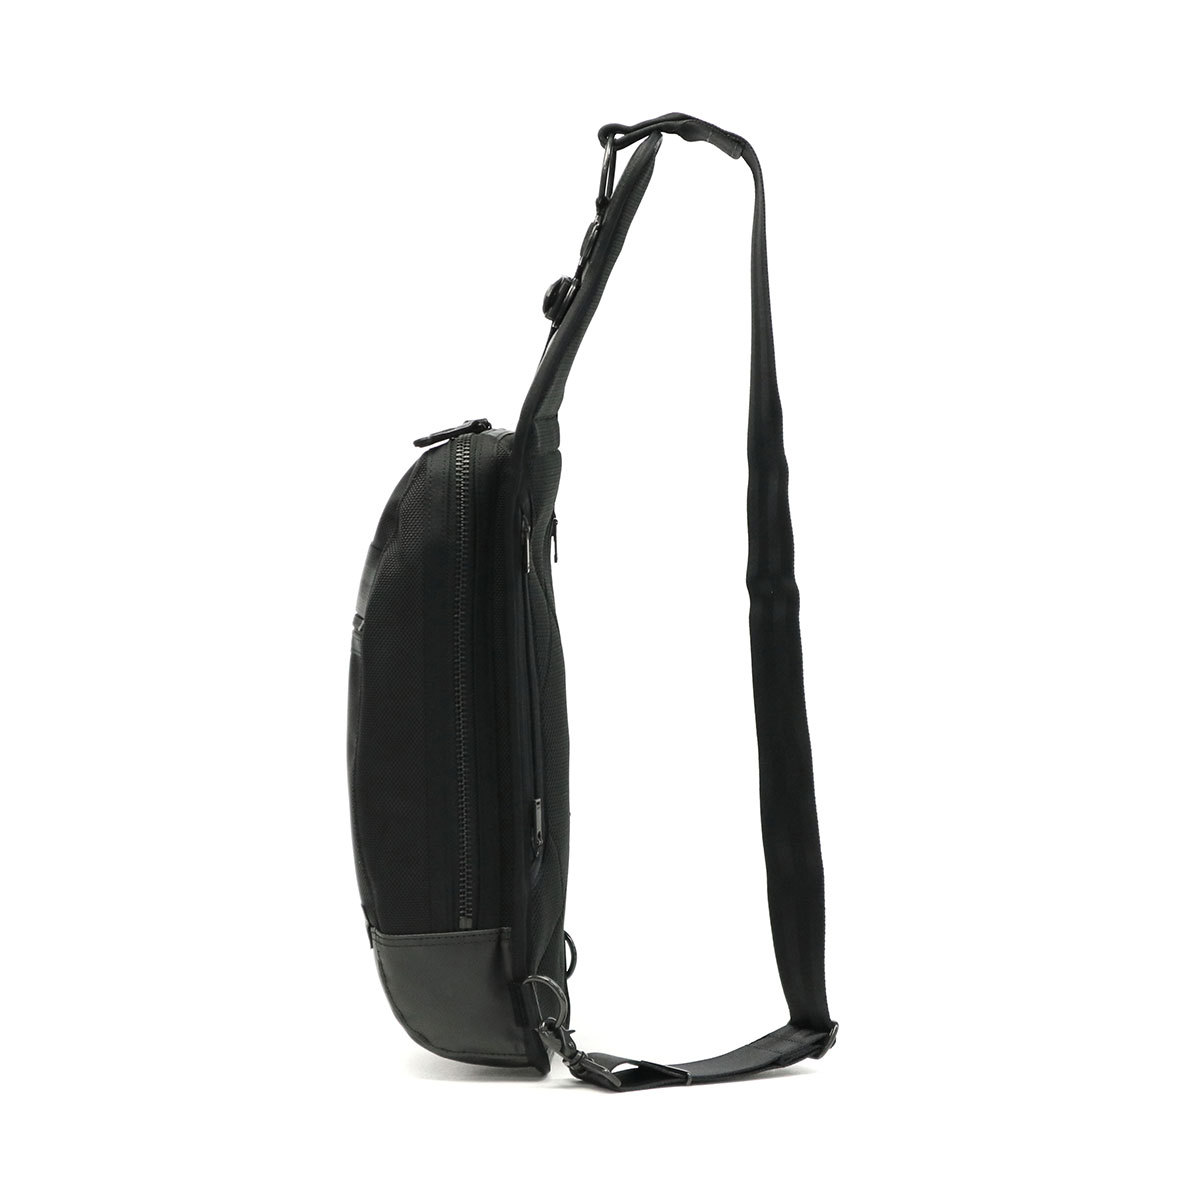  Porter нагрев sling сумка на плечо 703-08000 сумка "body" Yoshida bag PORTER HEAT мужской сумка наклонный .. one плечо 